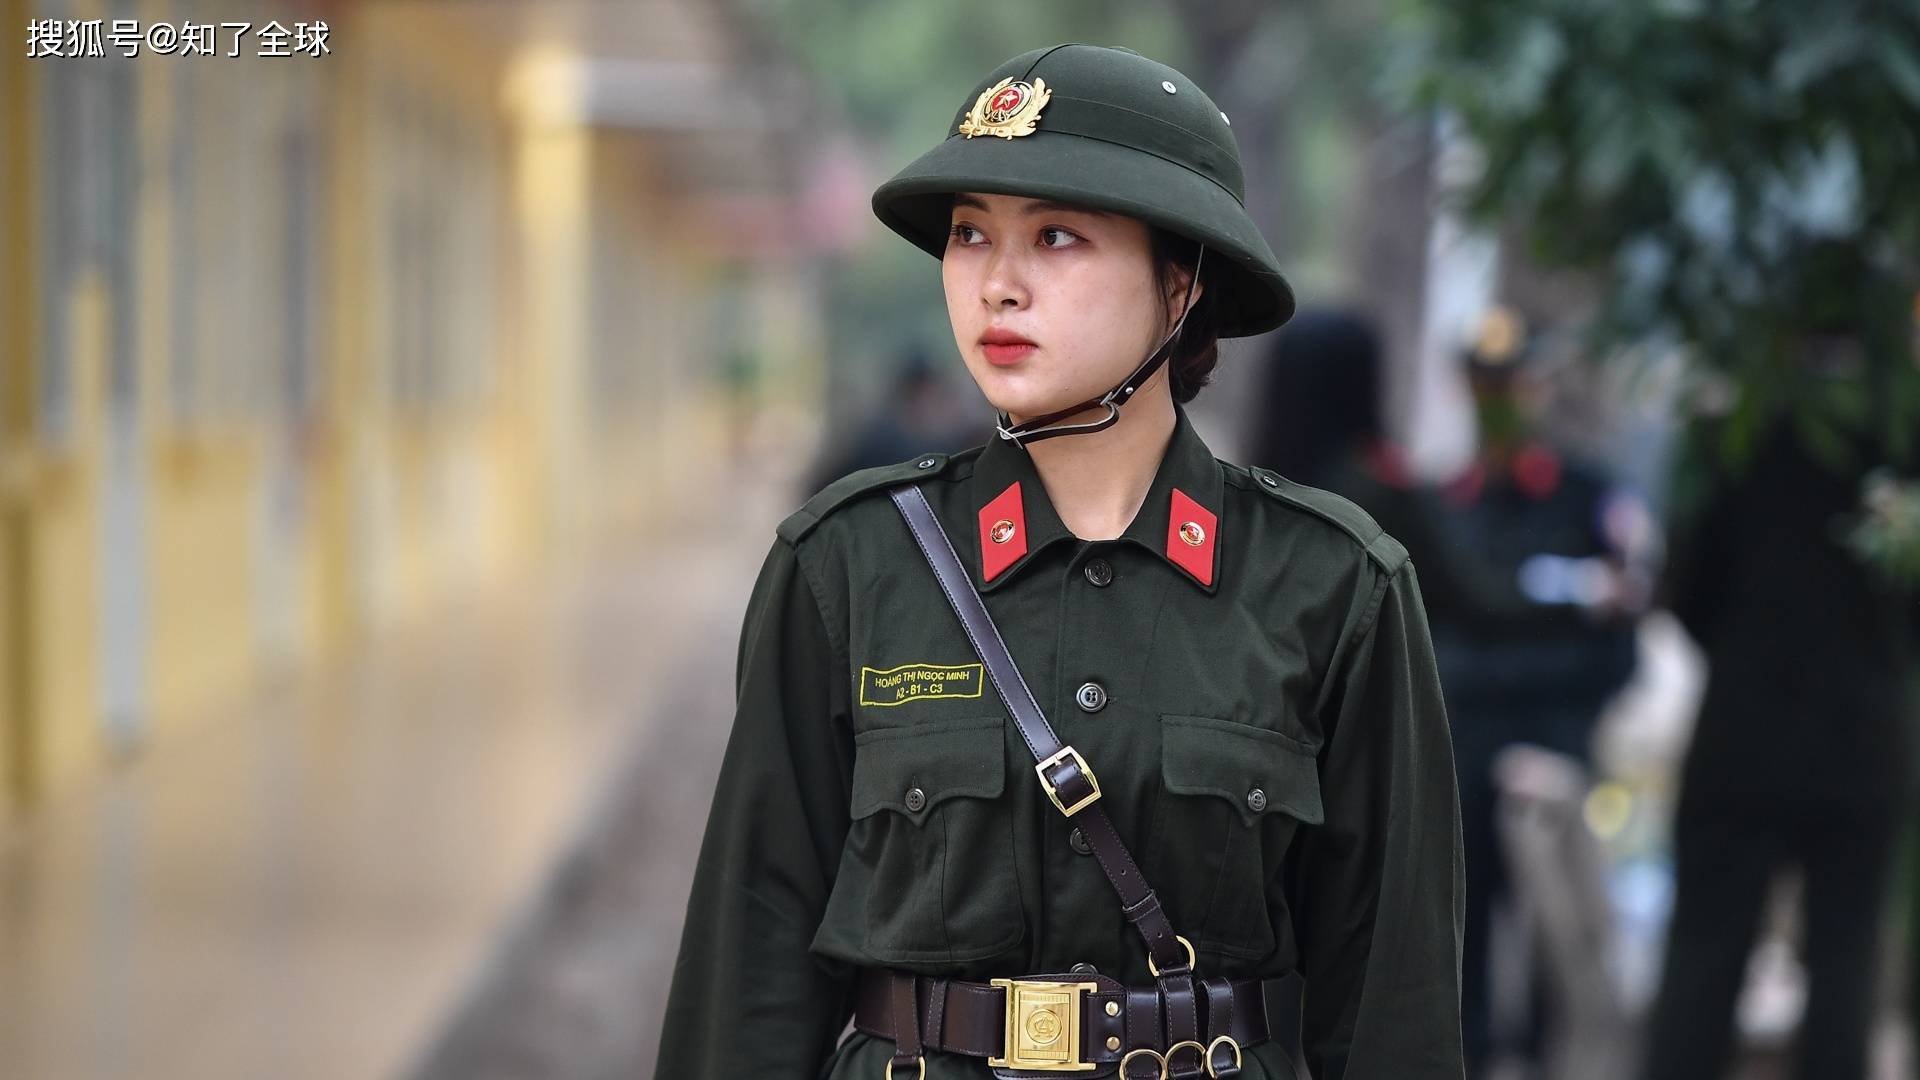 越南,一位19岁女警的自述:在这里会被罚站!但我们长大了!